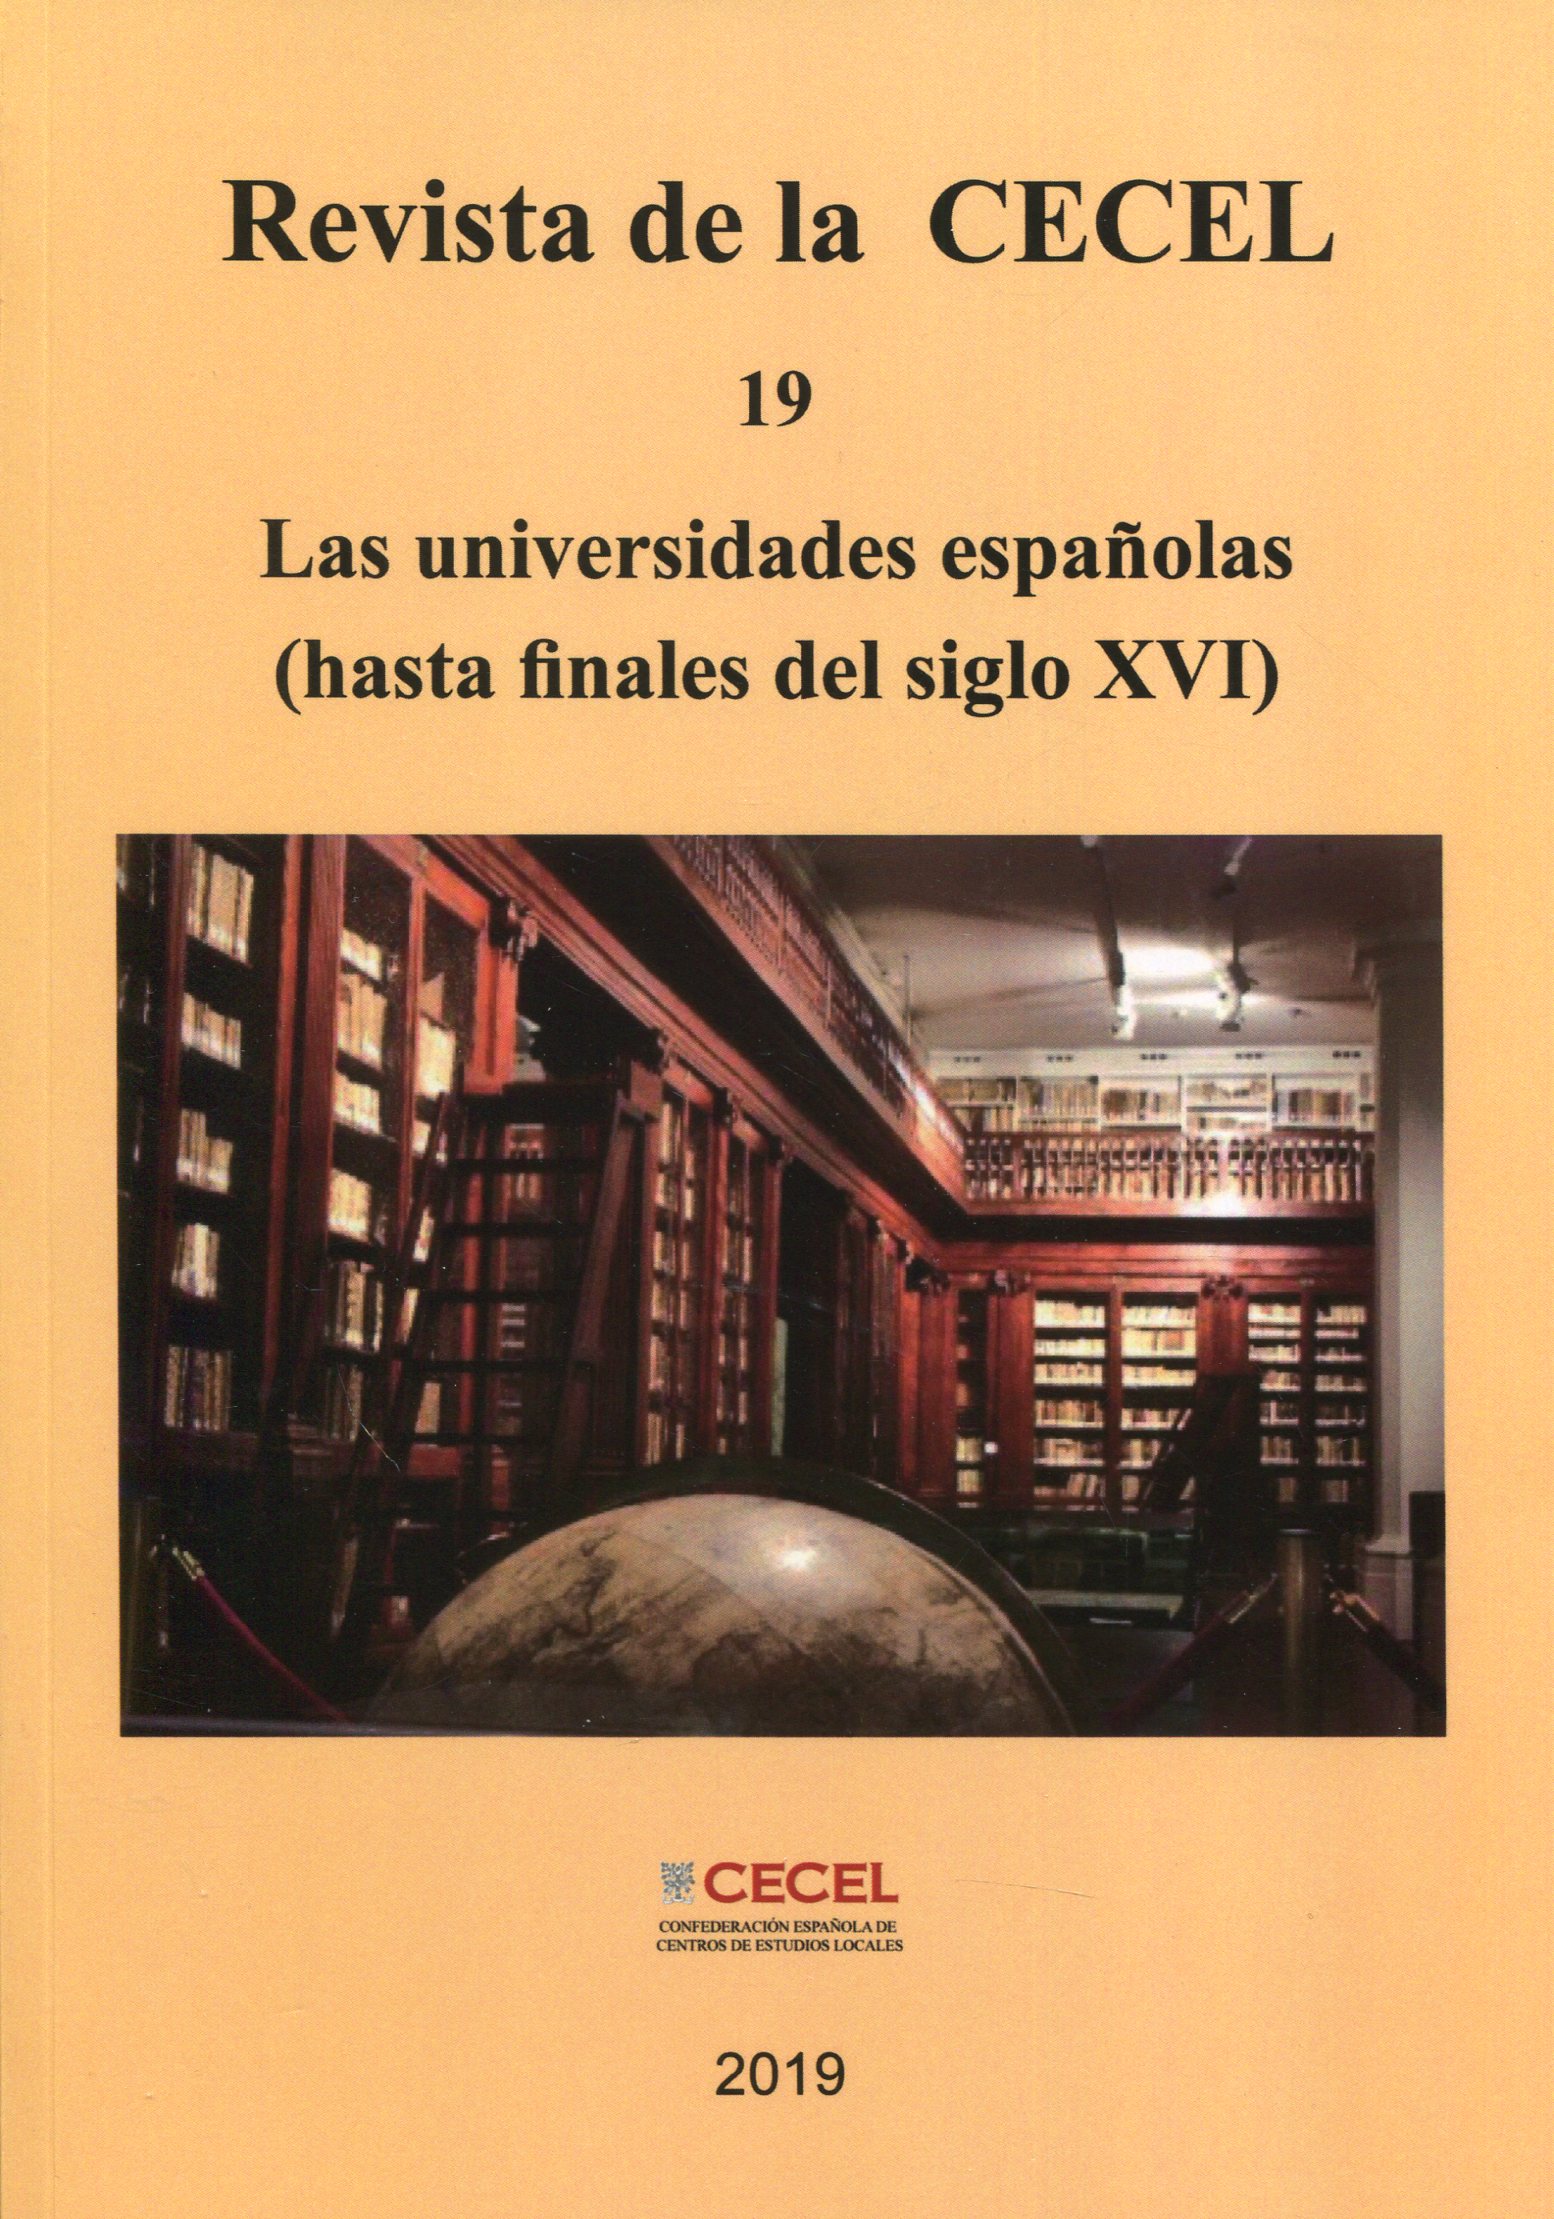 Las universidades españolas: (hasta finales del siglo XVI)